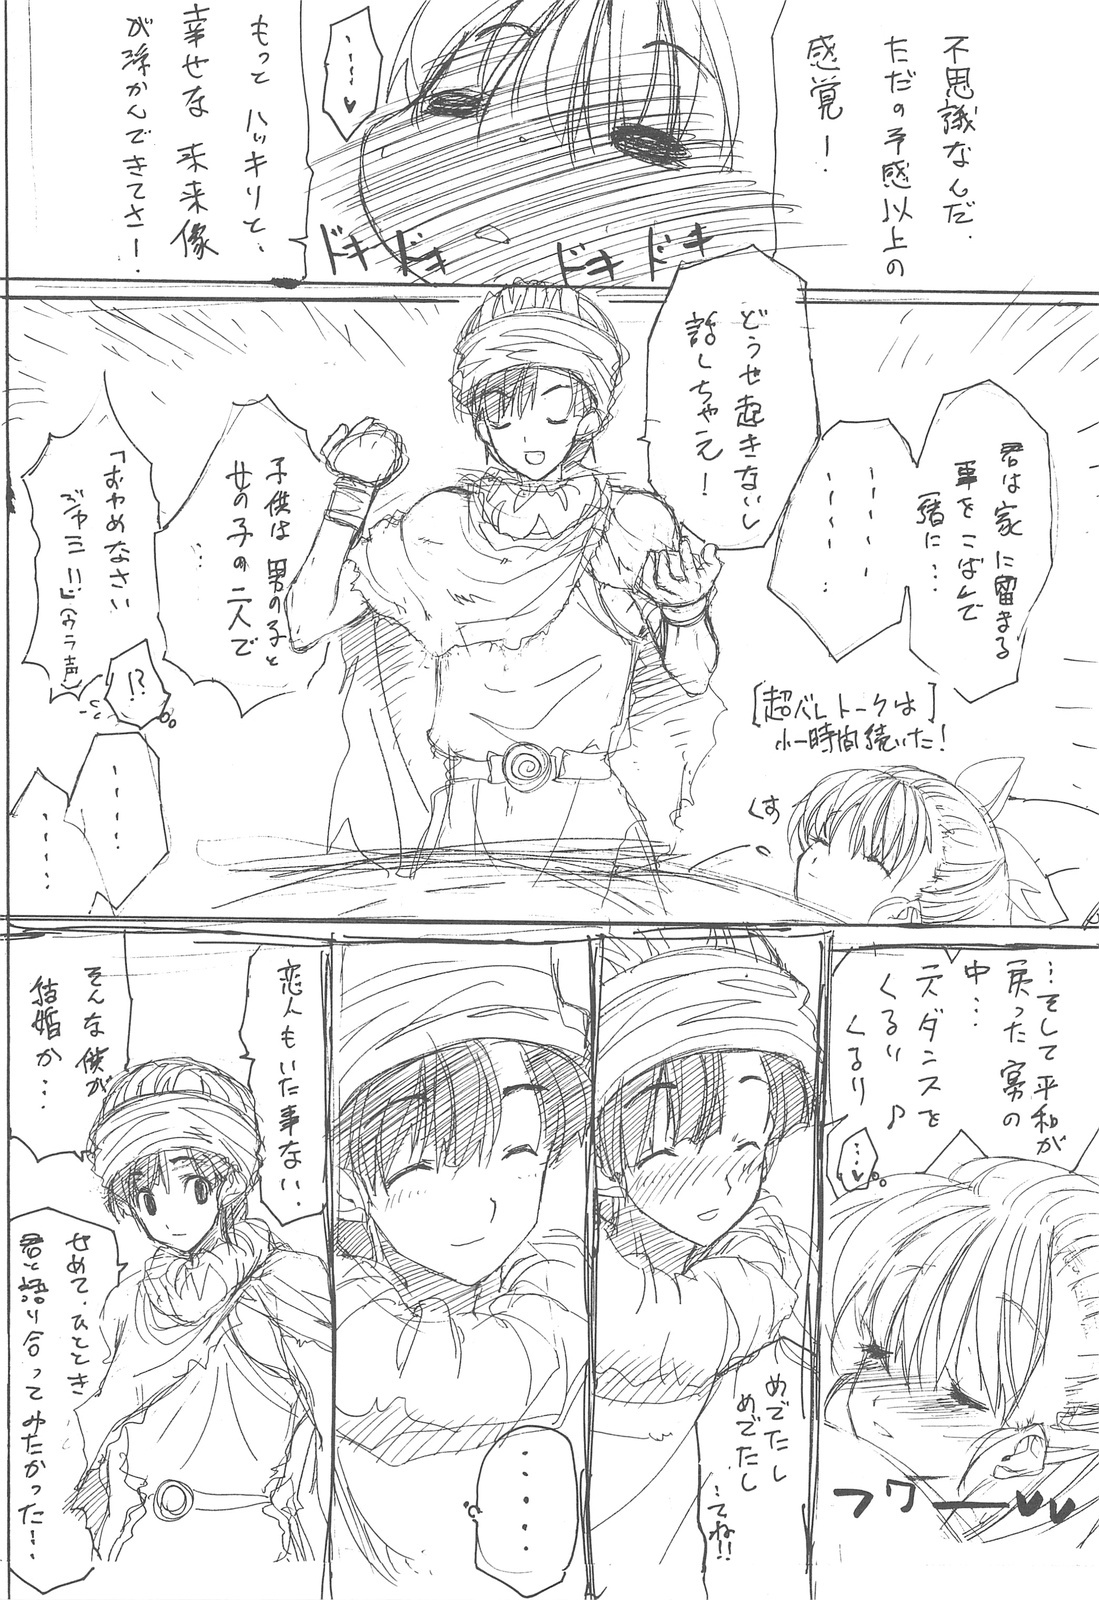 (Mimiket 20) [ZINZIN (Hagure Metal)] DRAGON REQUEST Vol. 12 (Dragon Quest V) page 6 full